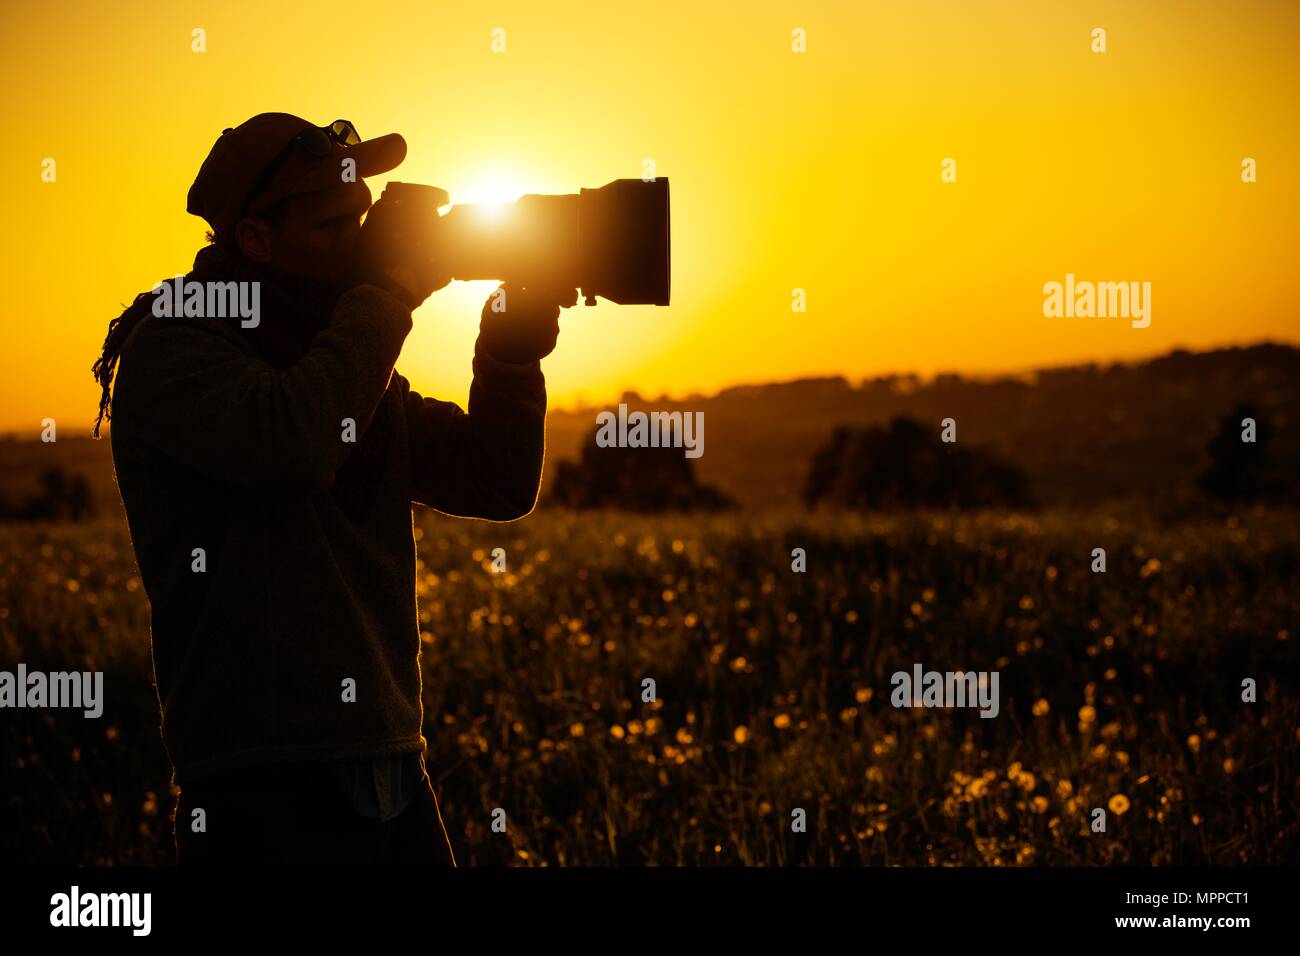 Appassionato di fotografia immagini e fotografie stock ad alta risoluzione  - Alamy